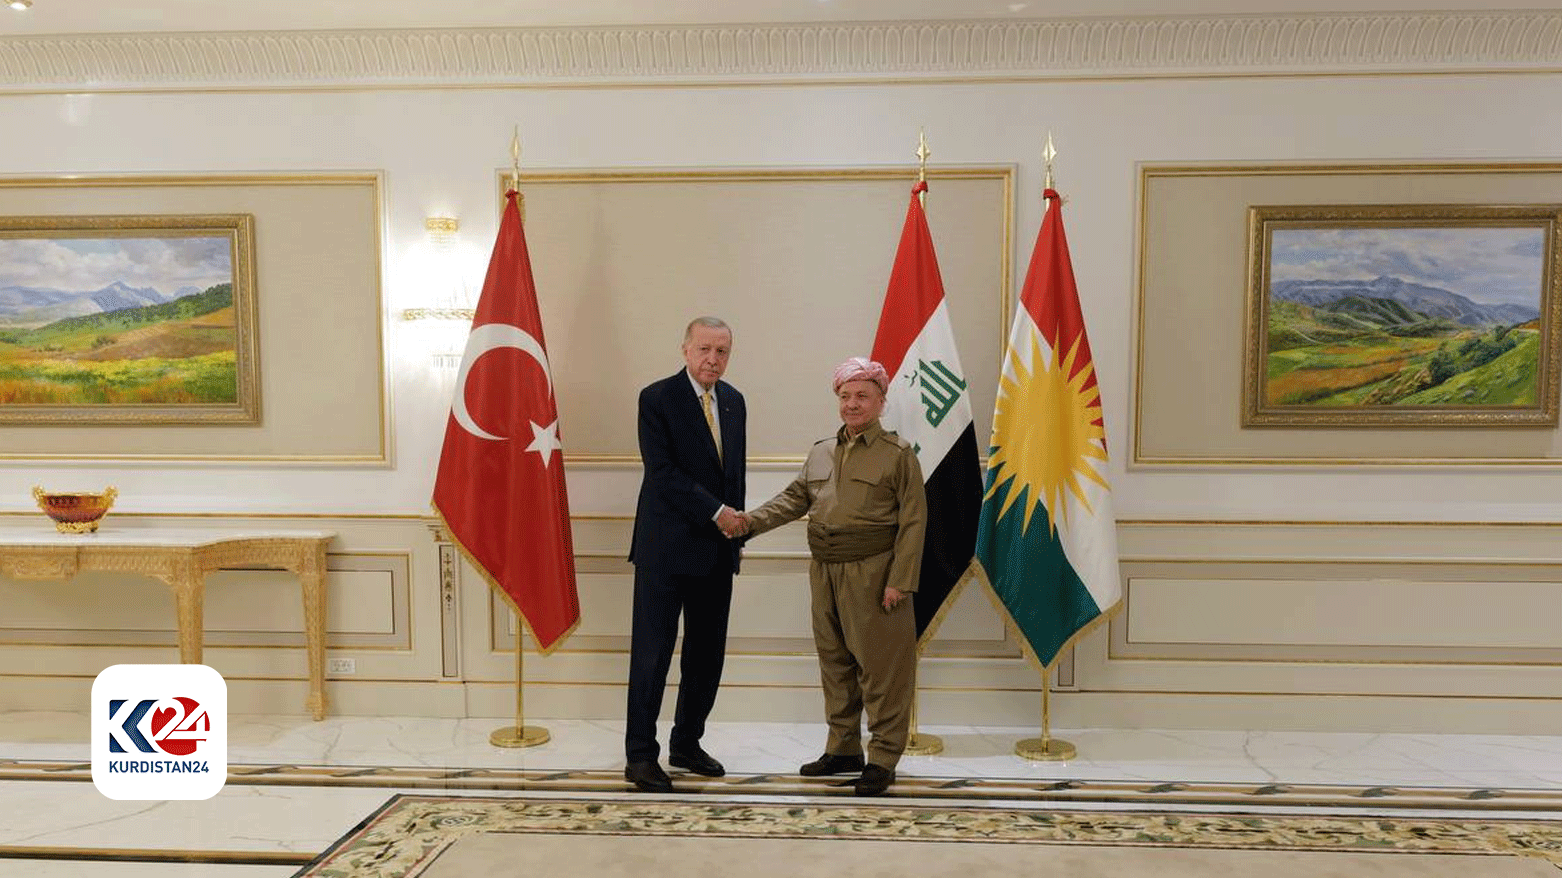 KDP President Masoud Barzani receives Turkish President Erdogan